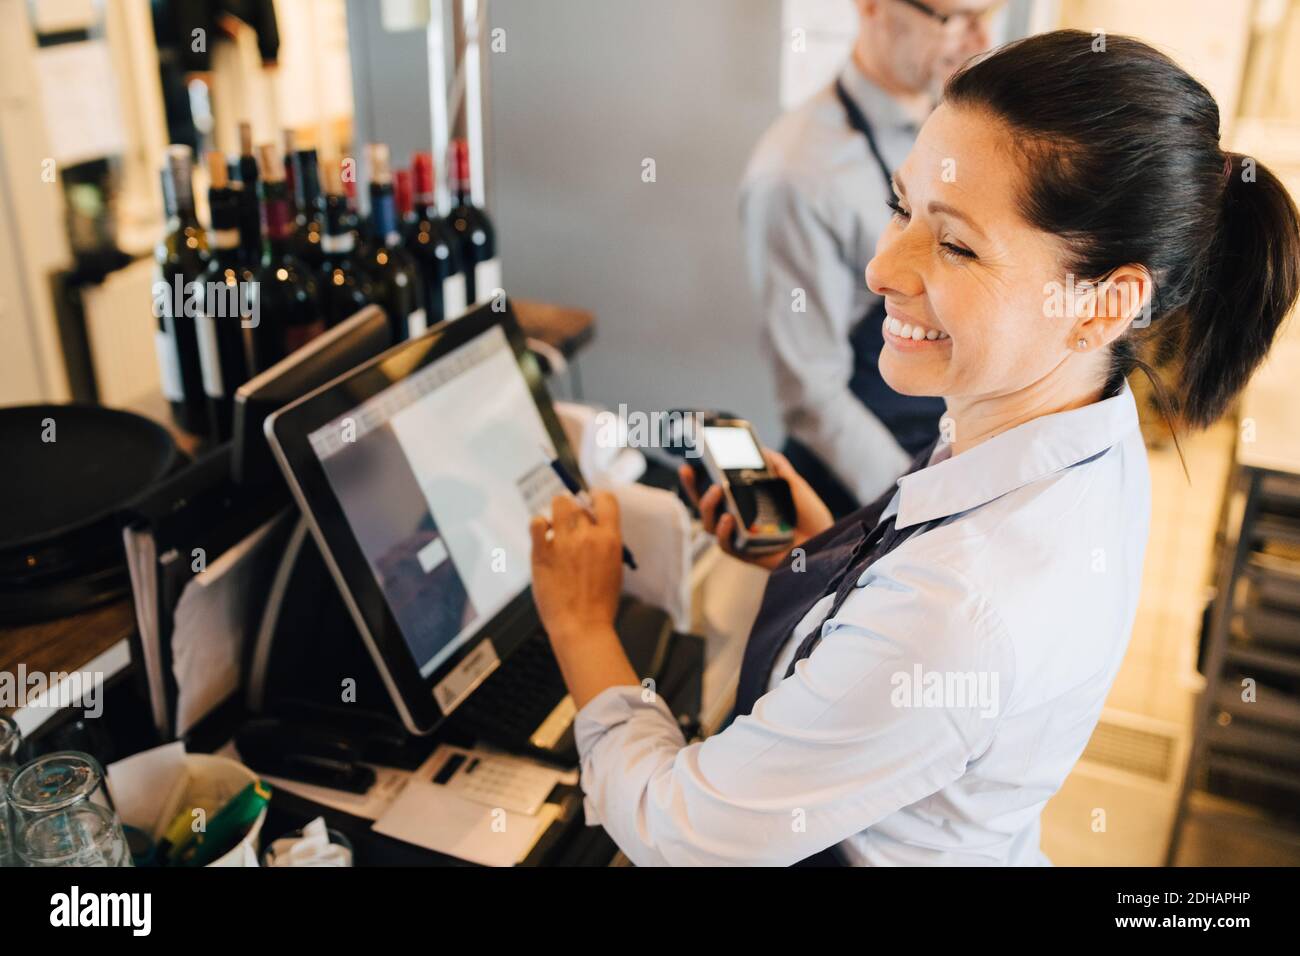 Lächelnde Frau, die den Computer benutzt, während sie den Kreditkartenleser in der Hand hält Restaurant Stockfoto